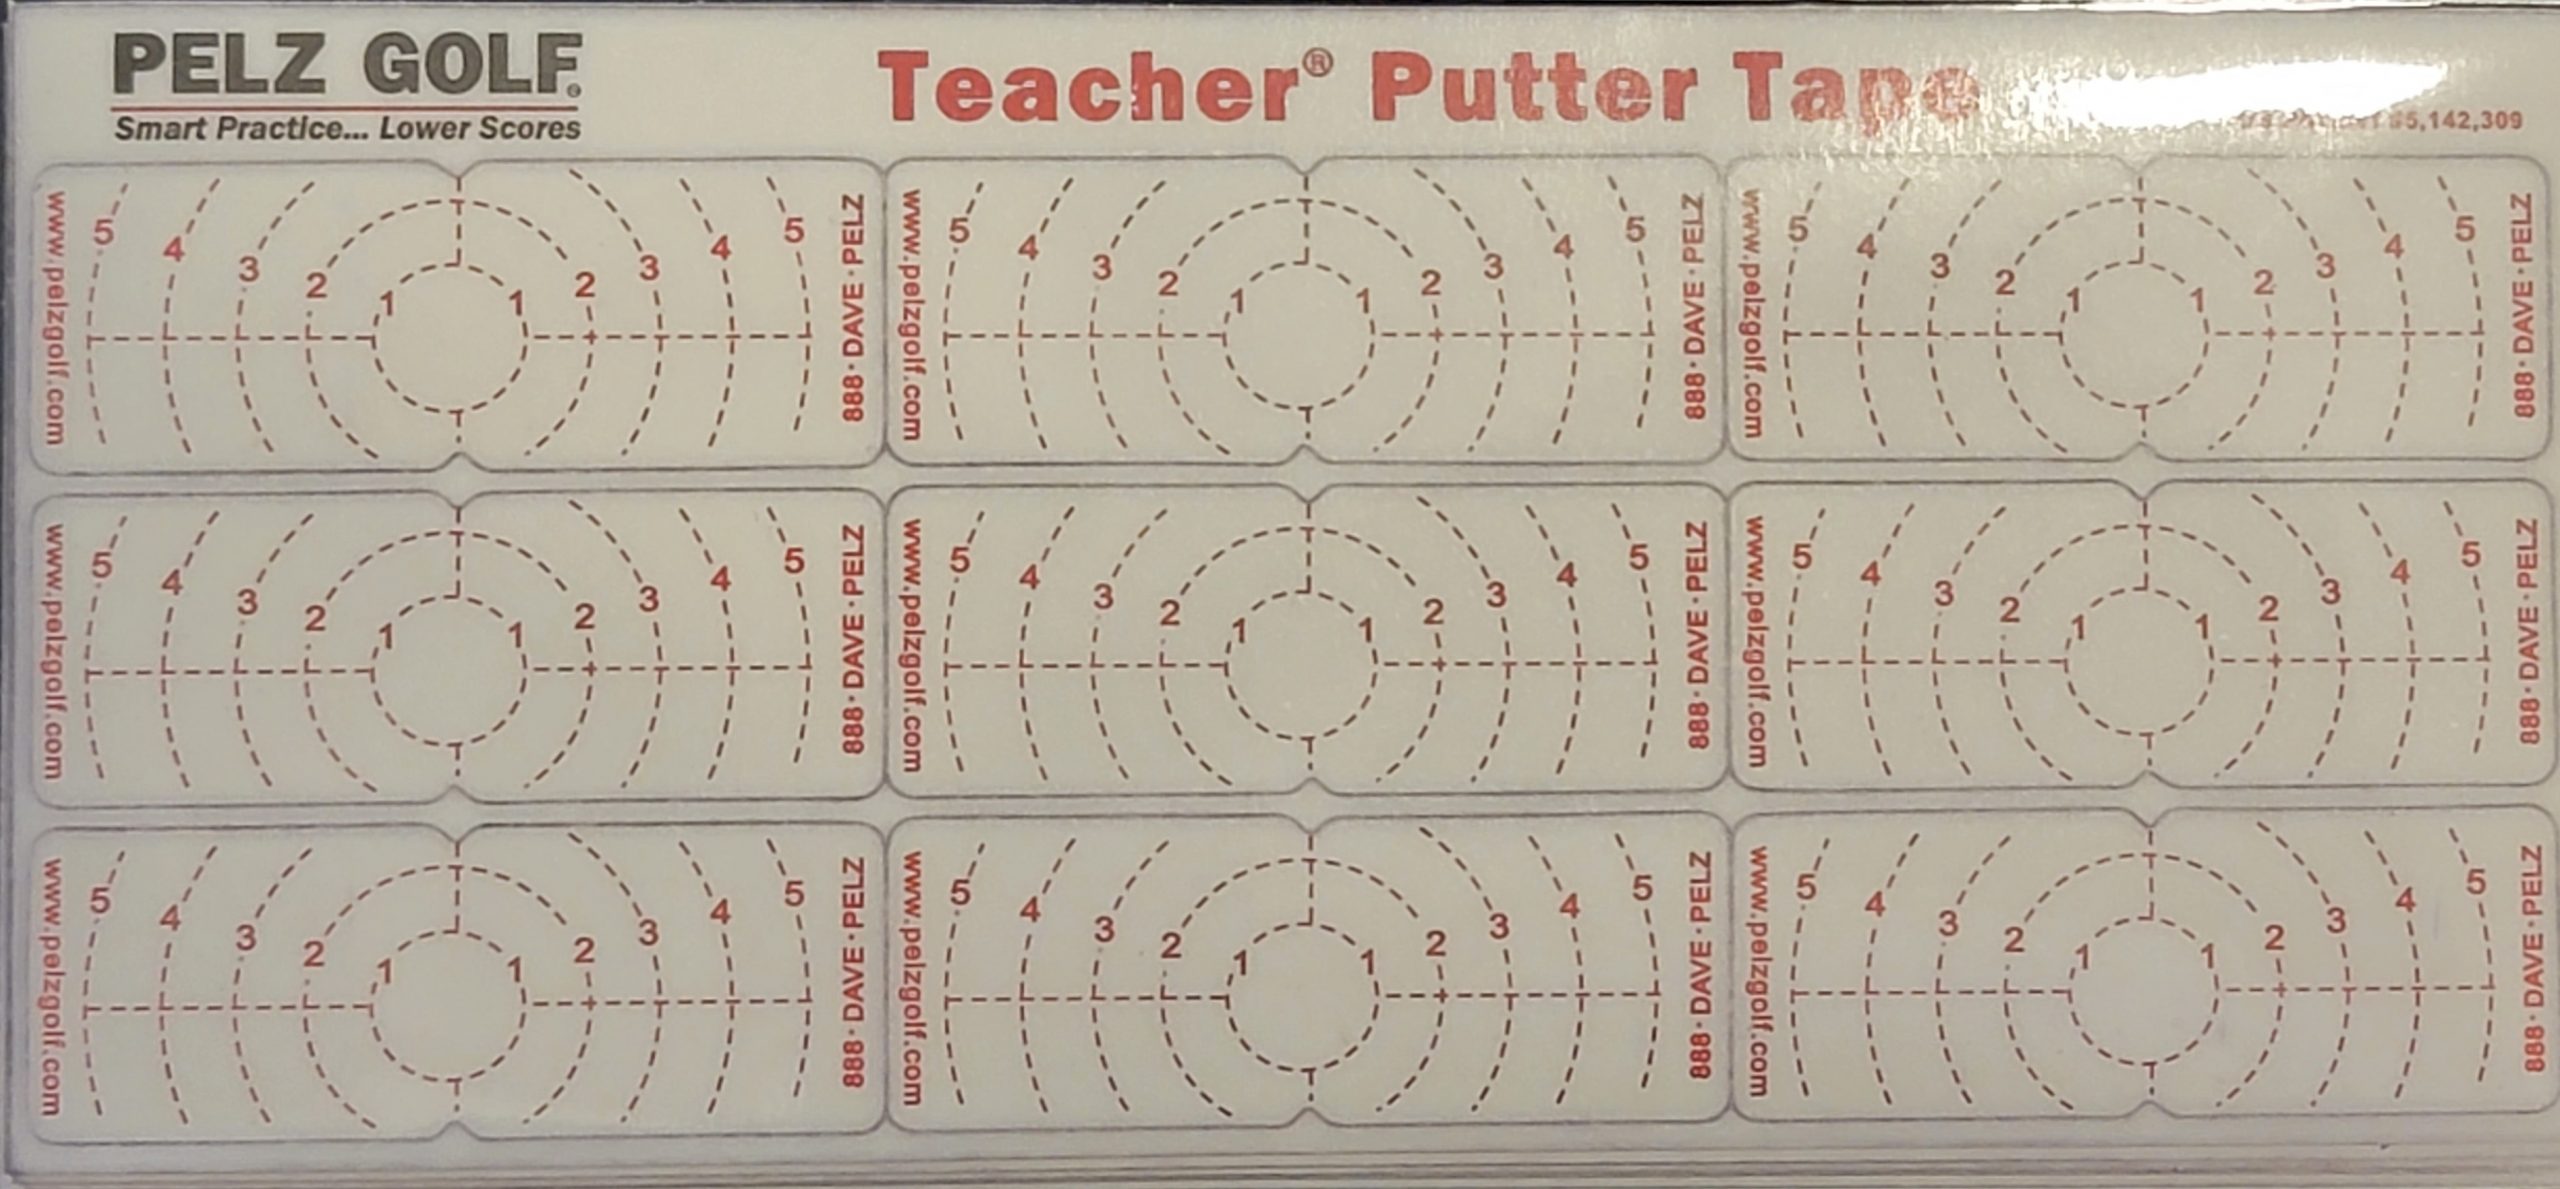 Old Duffer Golf image of Pelz Golf Teacher Putter Tape